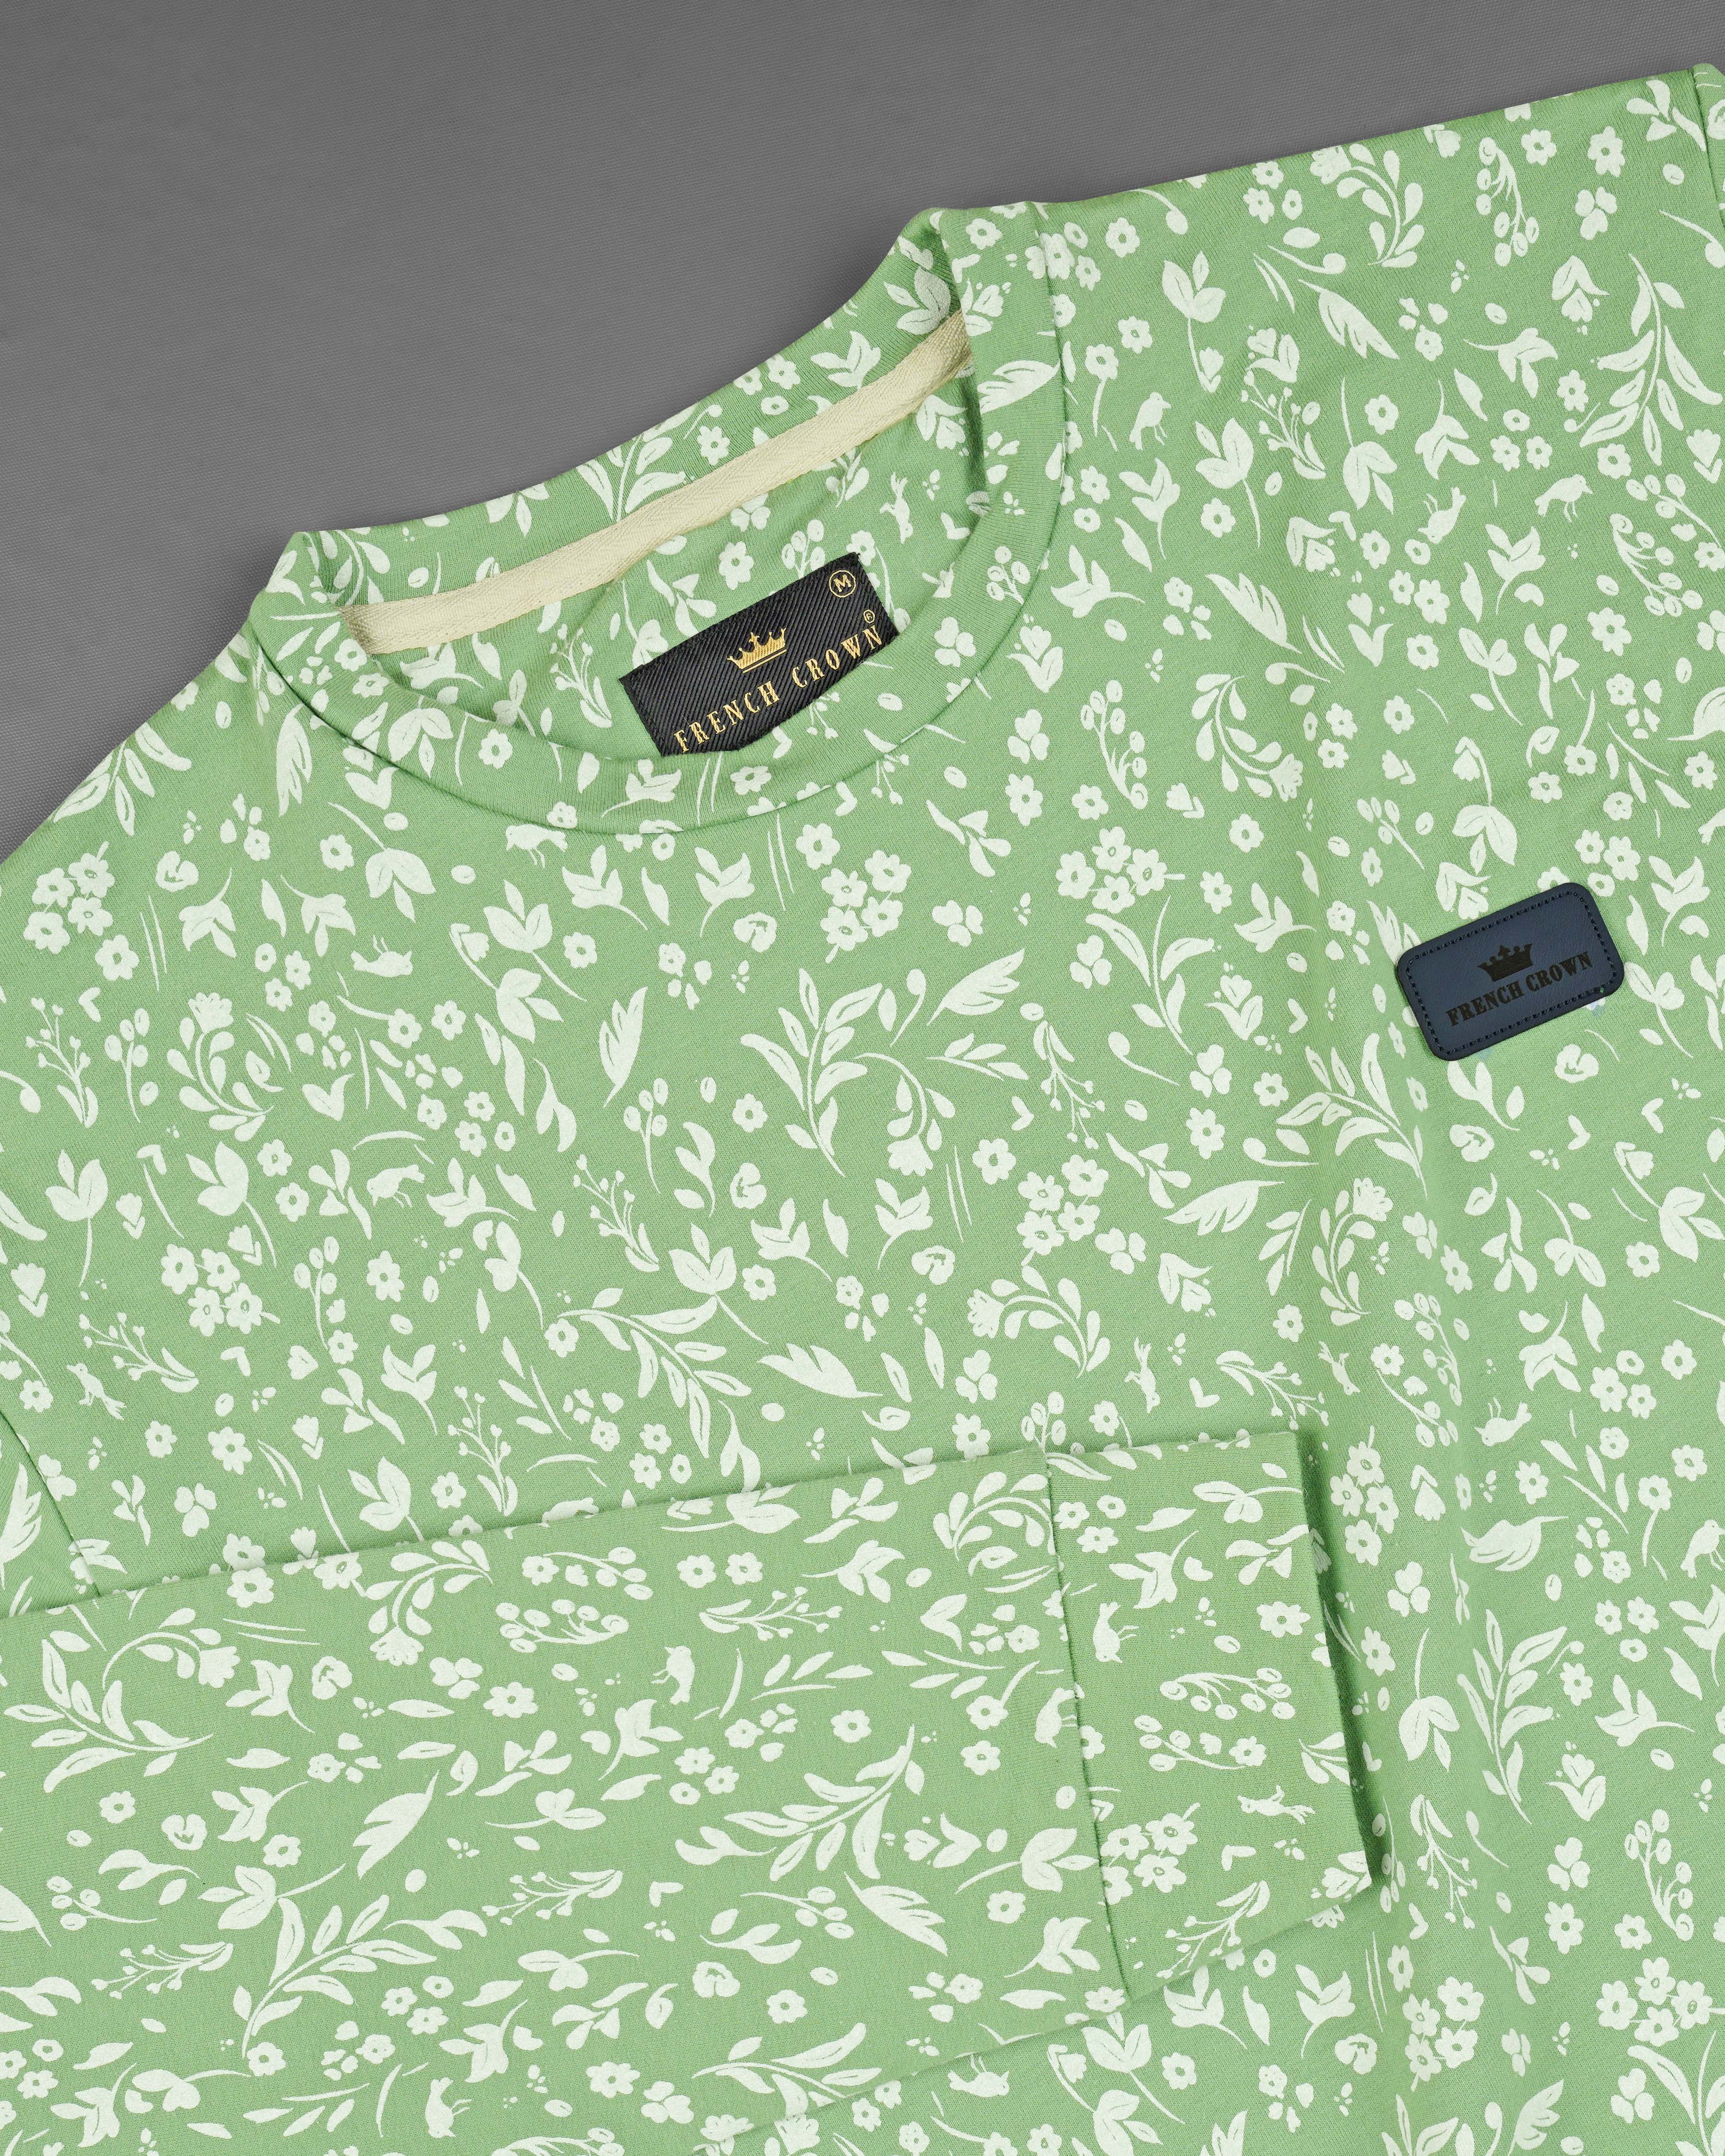 Mantis Green Ditsy Printed Full Sleeve Premium Cotton Jersey Sweatshirt 

TS618-M, TS618-M, TS618-R, TS618-XL, TS618-XXL, TS618-3XL, TS618-4XL